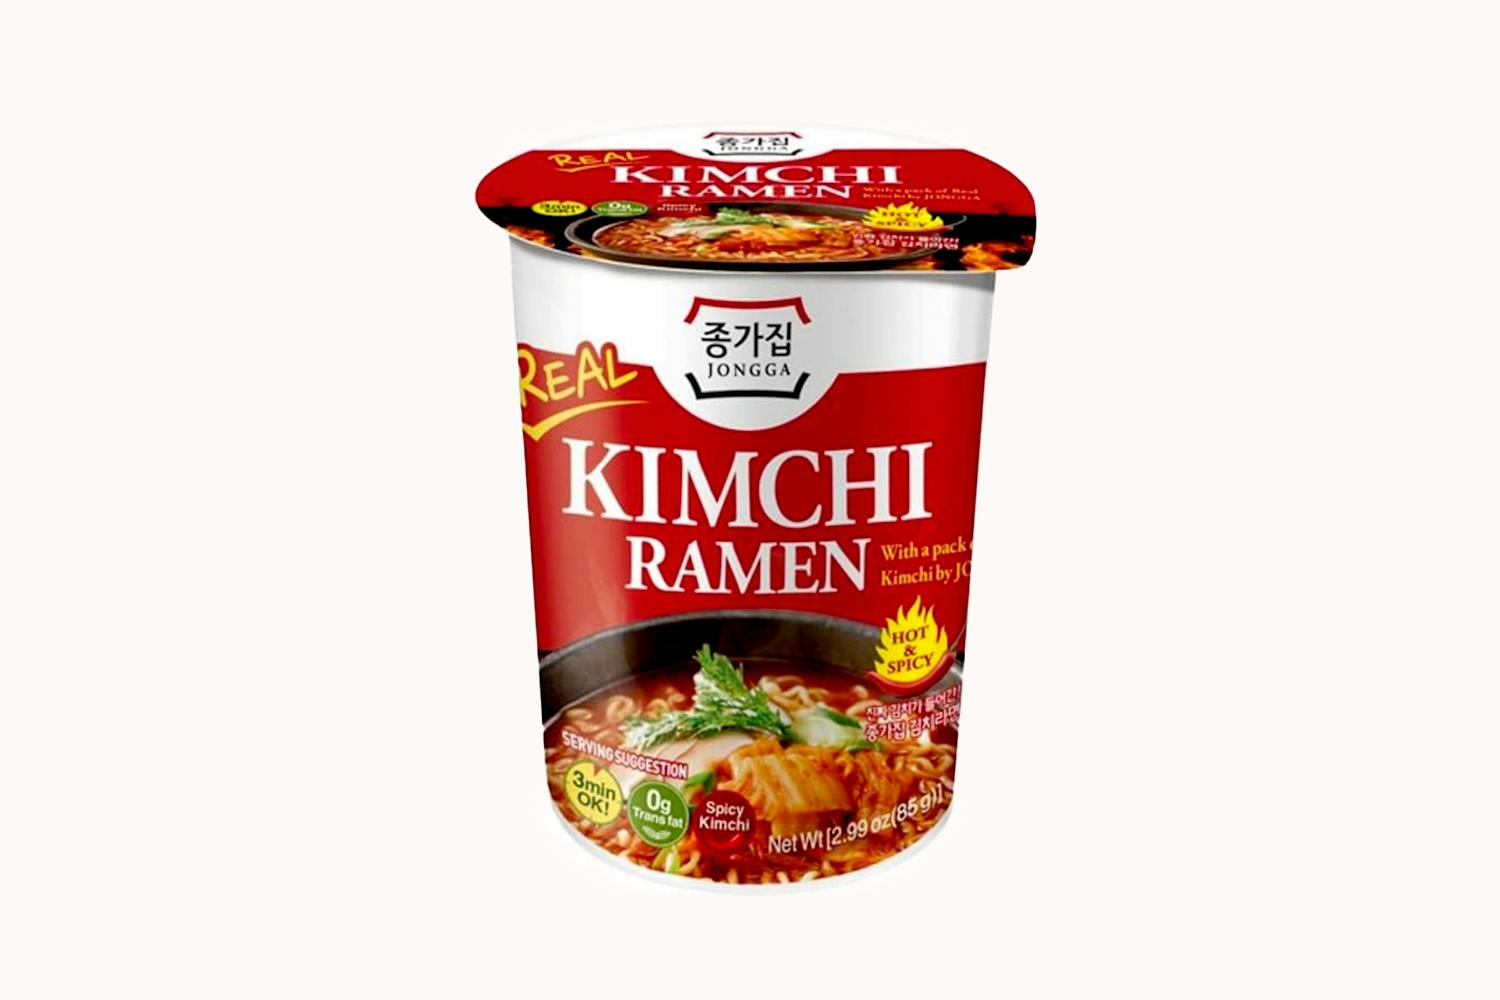 Jongga Kimchi Ramen Instant Cup Noodles